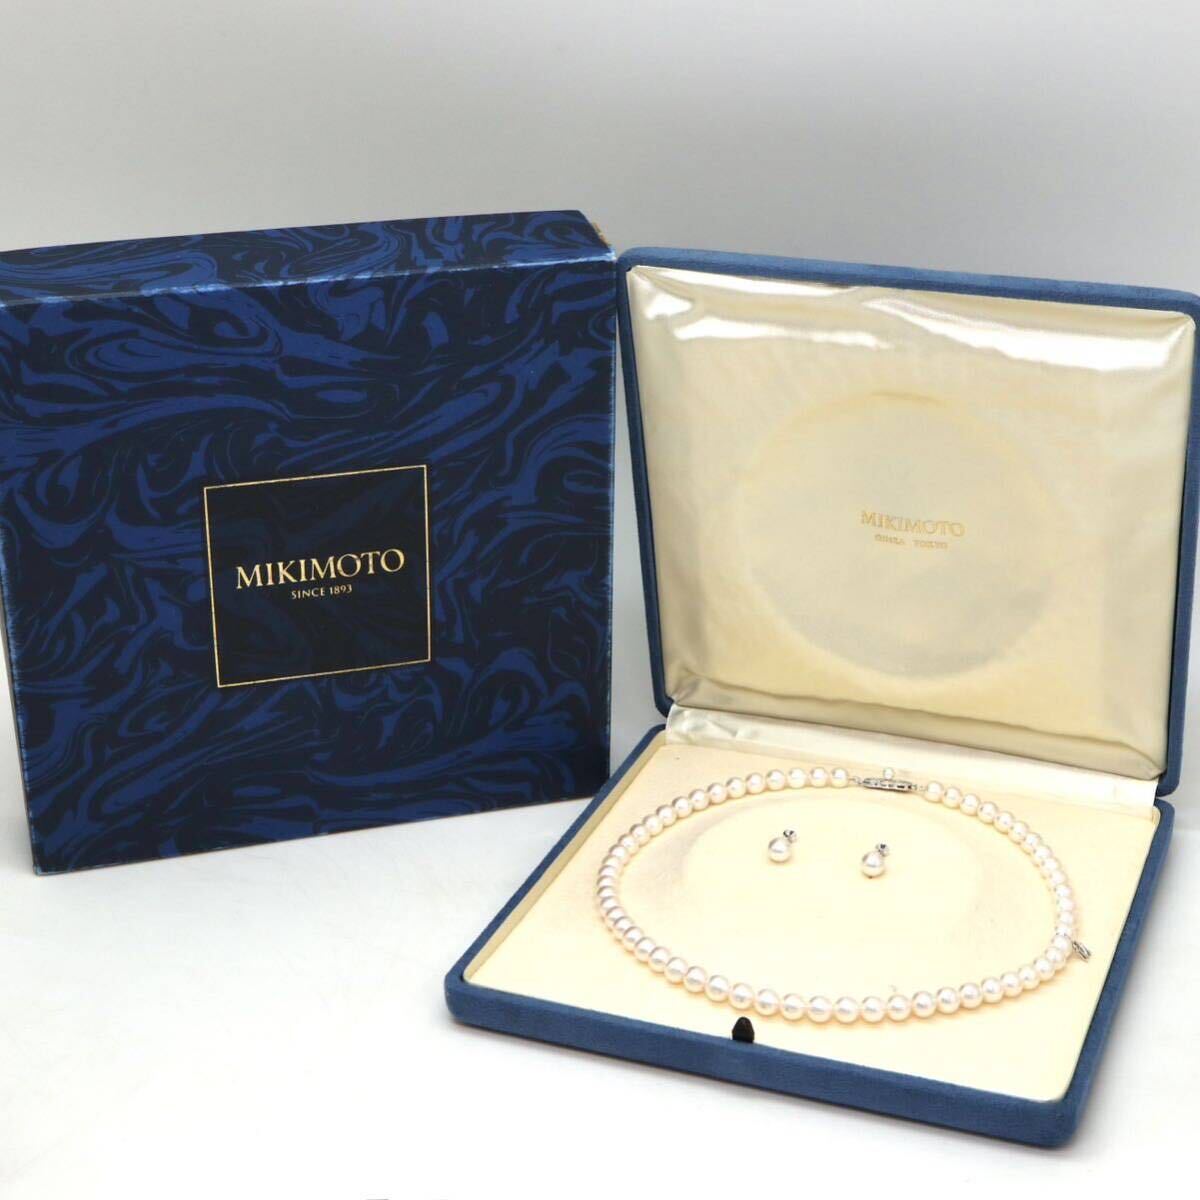 MIKIMOTO(ミキモト)高品質!!◆アコヤ本真珠ネックレス/イヤリング◆A 約35.3g 約42.5cm 7.0-7.5mm珠 pearl パール necklace FB2/FB2の画像2